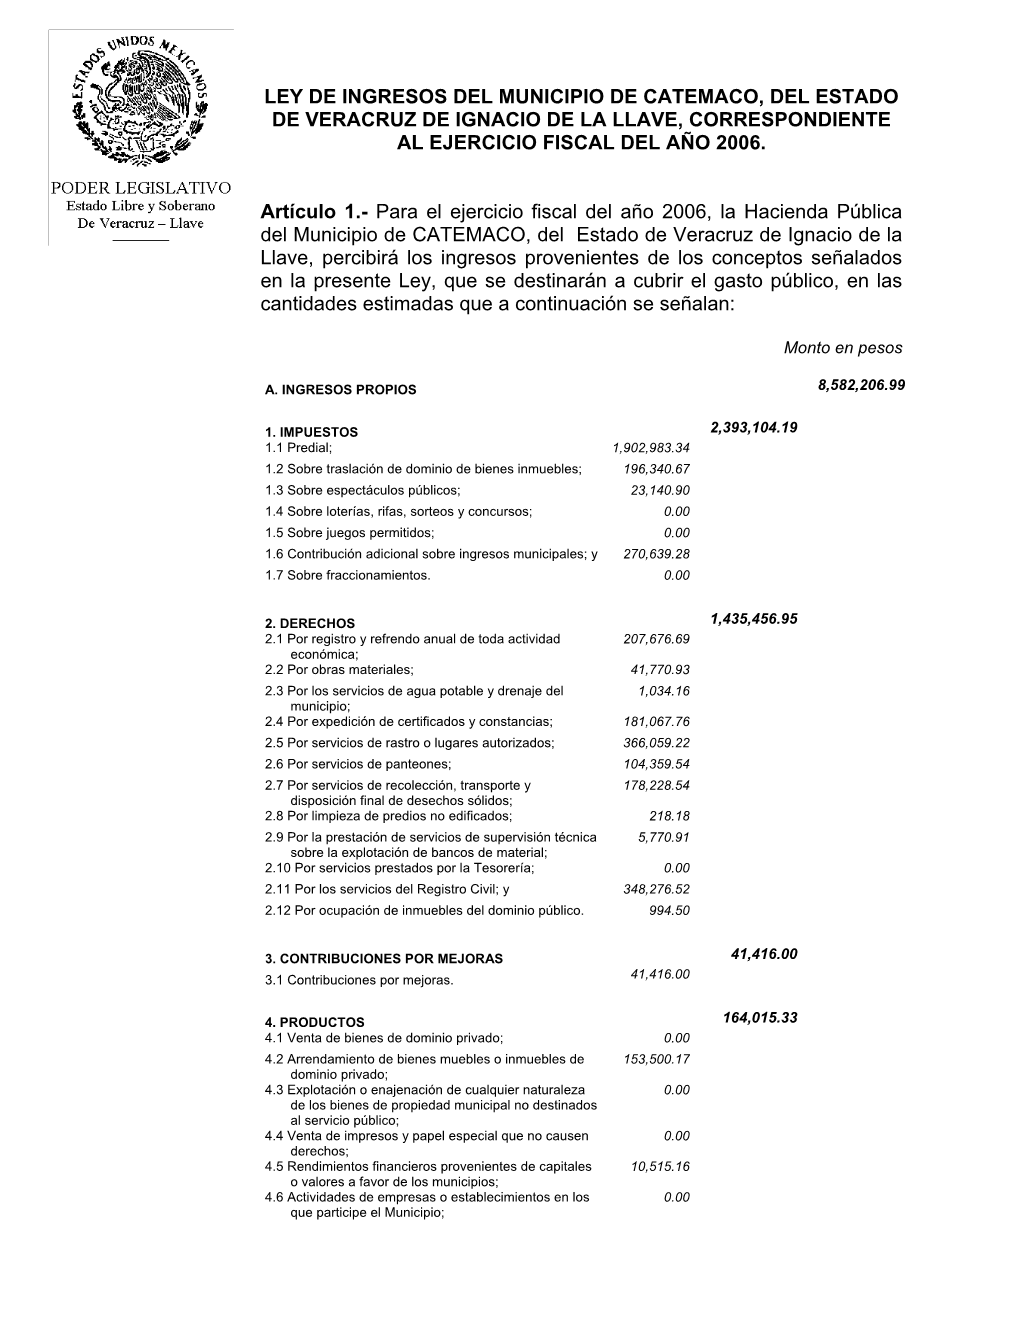 Ley De Ingresos Del Municipio De Catemaco, Del Estado De Veracruz De Ignacio De La Llave, Correspondiente Al Ejercicio Fiscal Del Año 2006